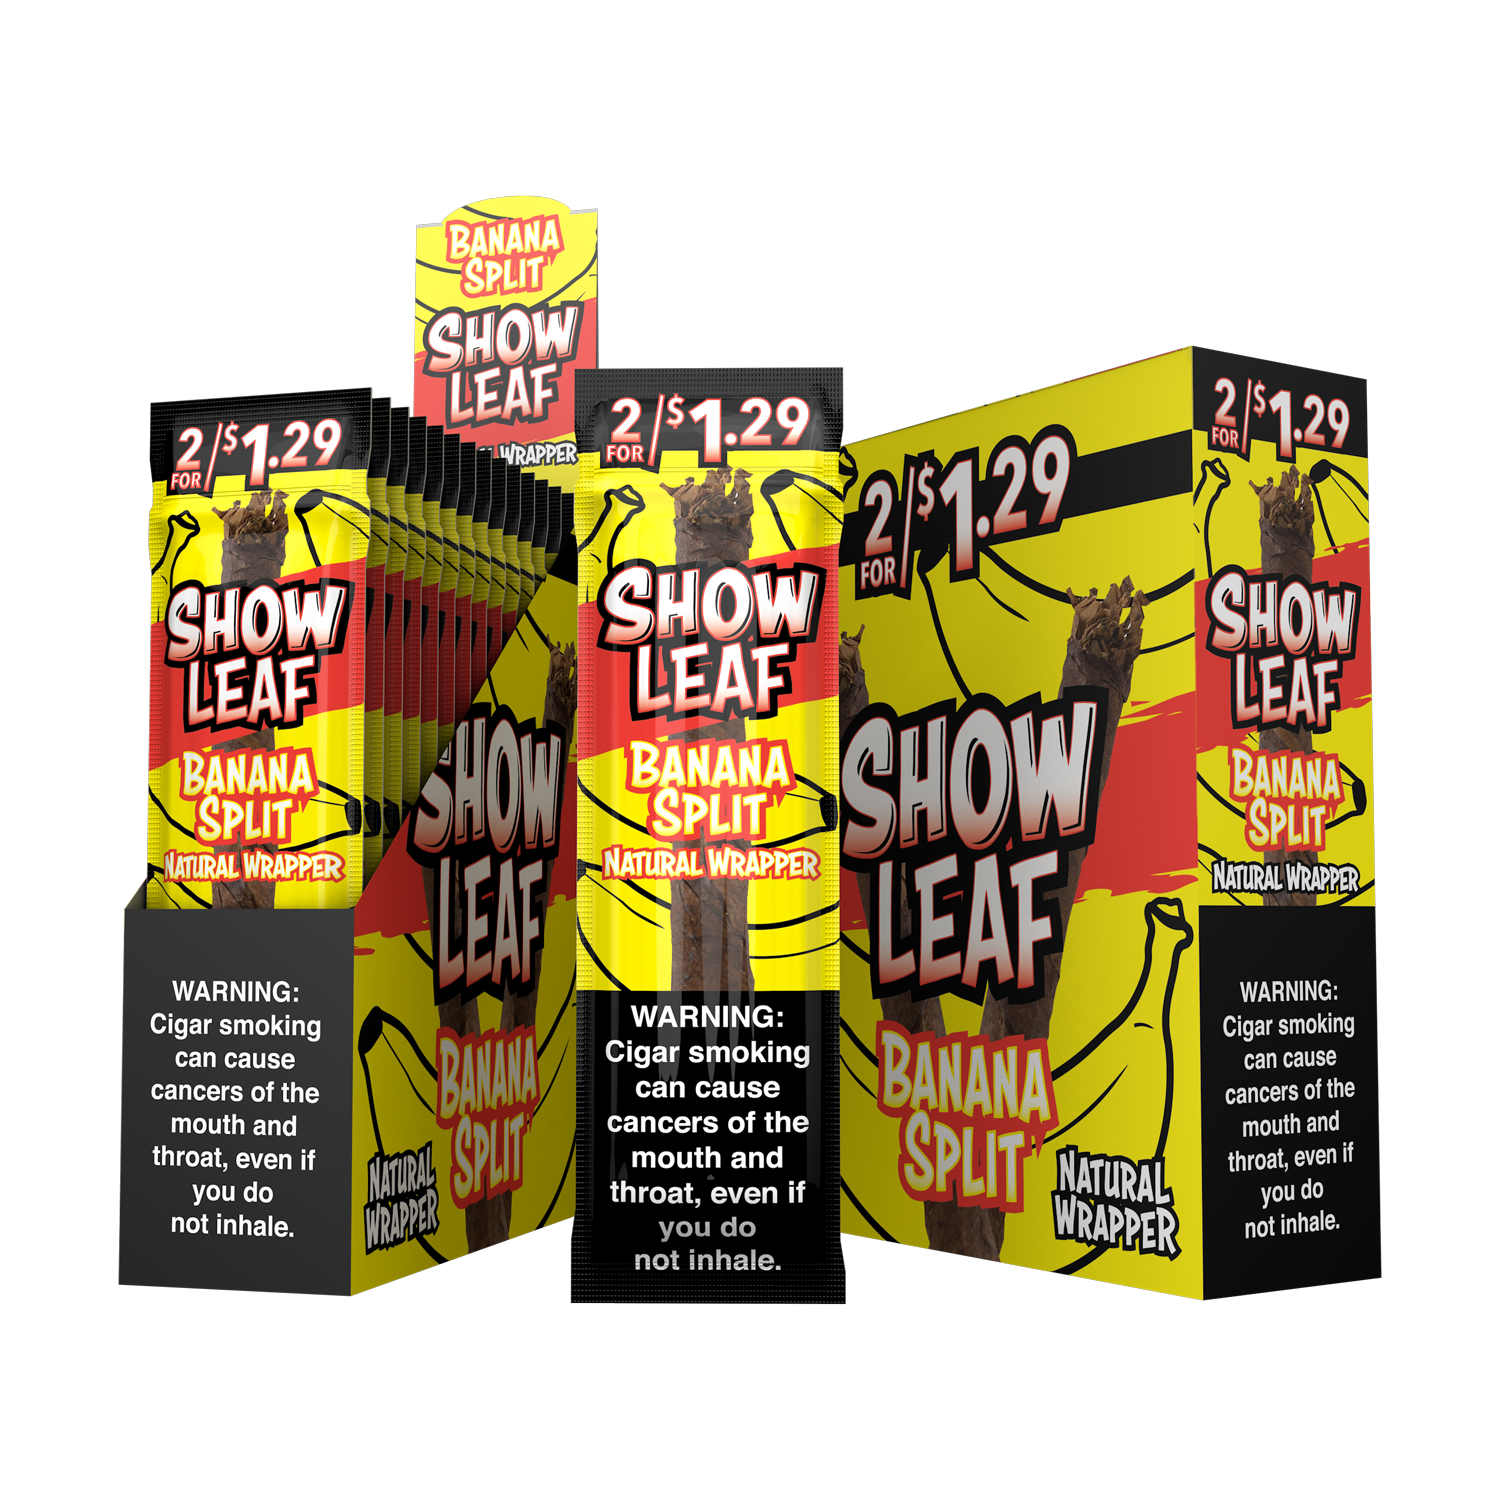 Show leaf banana 2/$1.29 15/2pk